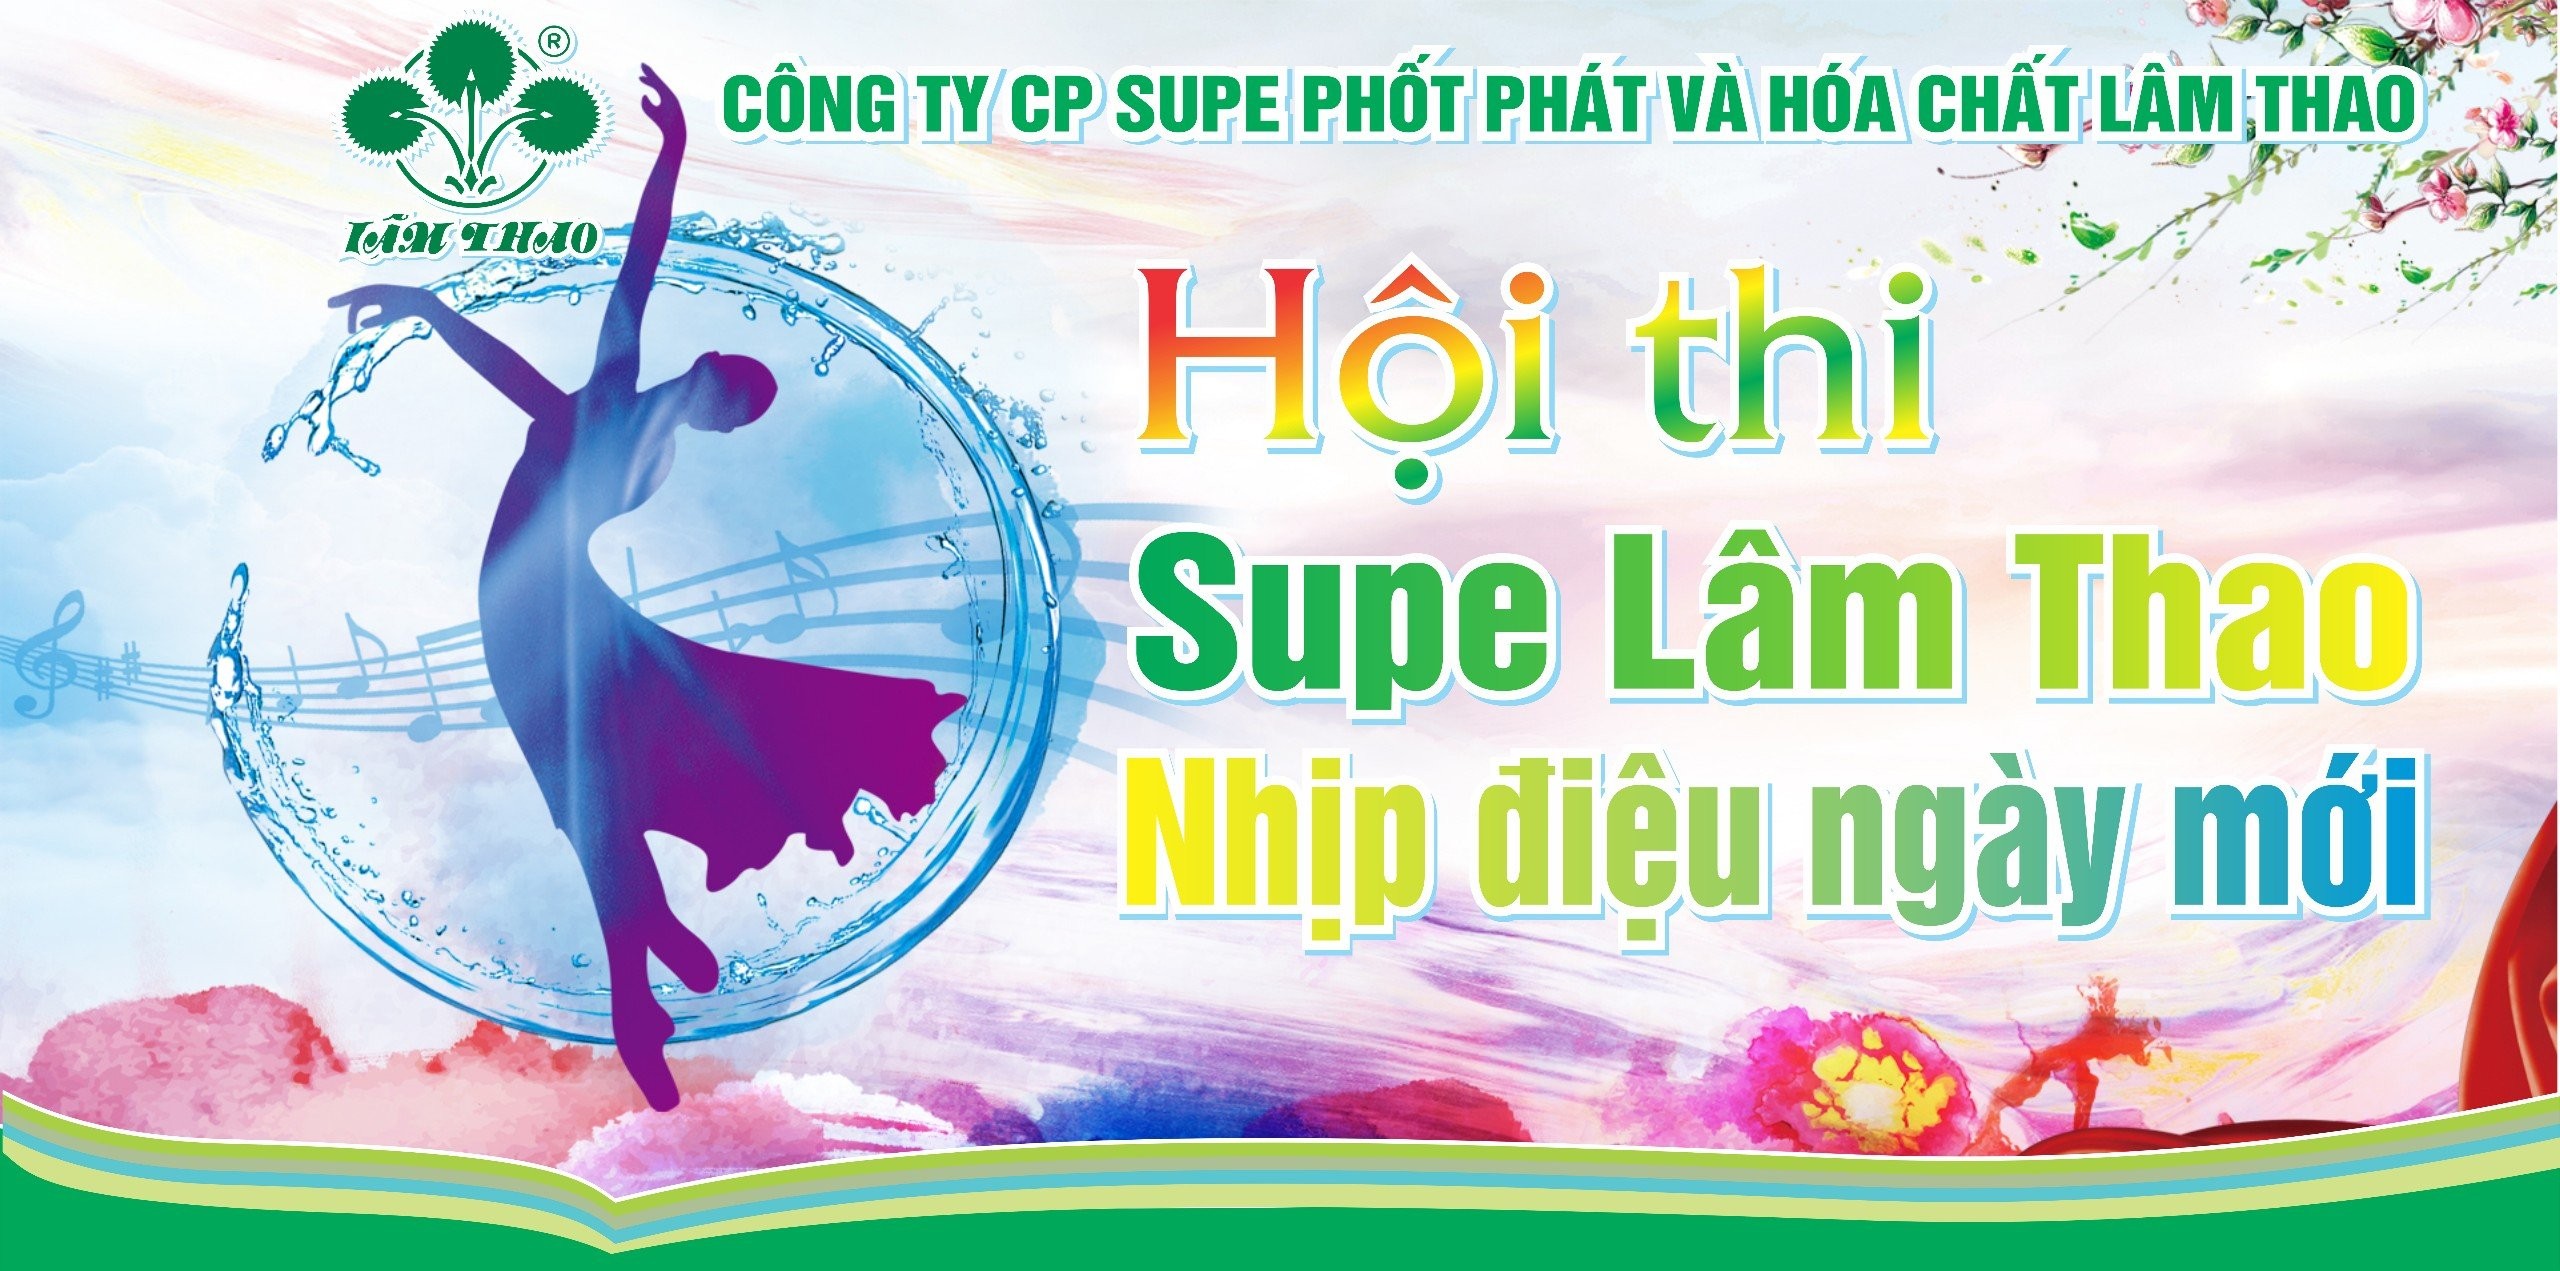 Hội thi "SUPE LÂM THAO- NHỊP ĐIỆU NGÀY MỚI" lần đầu tiên được tổ chức